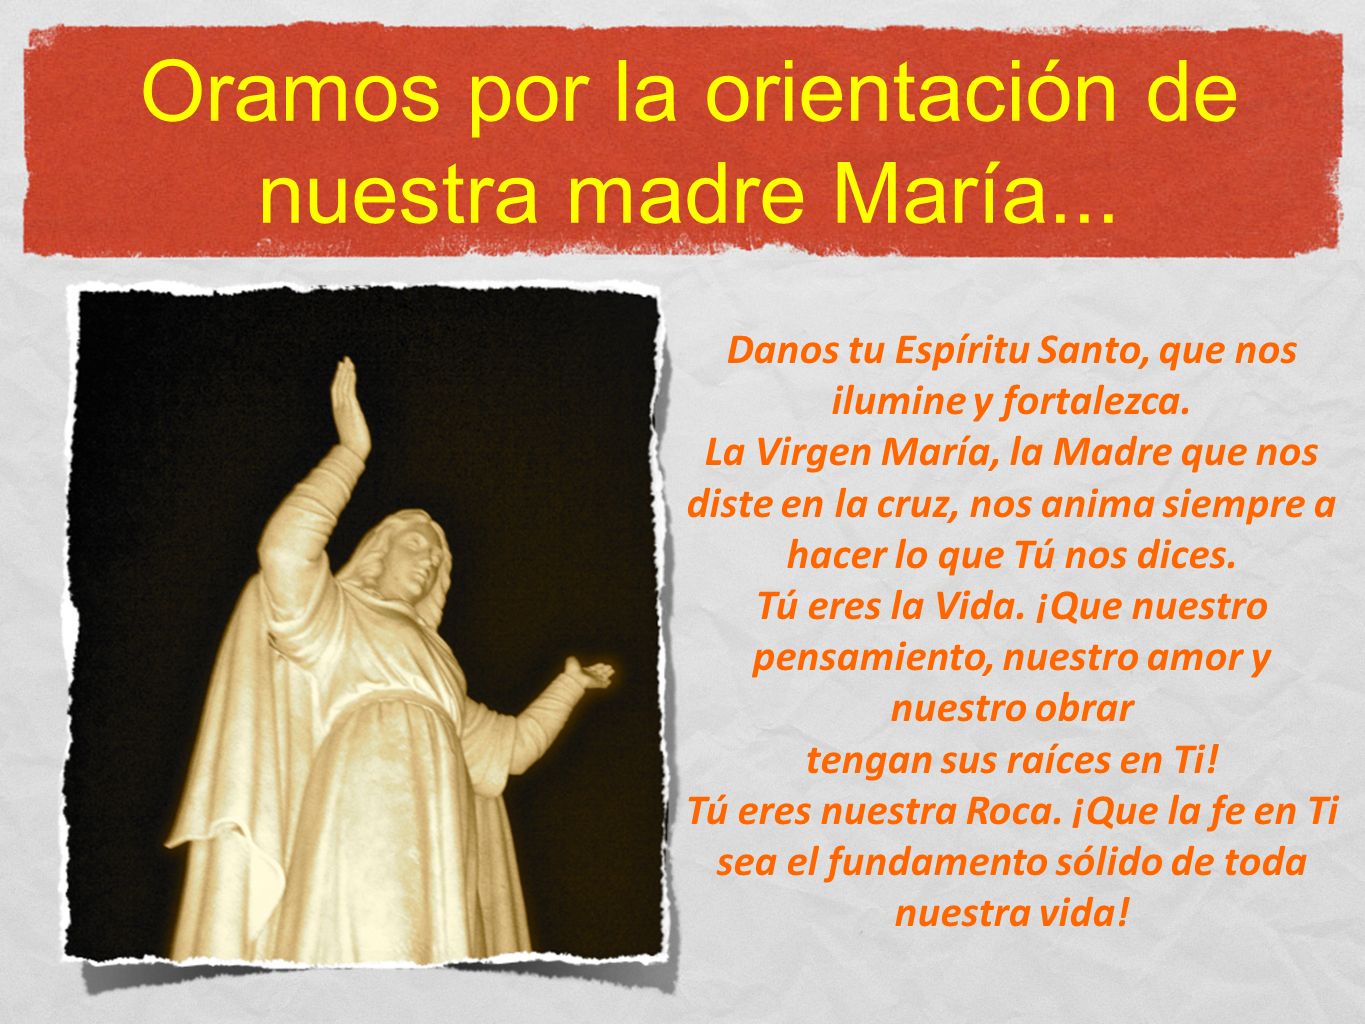 Oramos por la orientación de nuestra madre María...